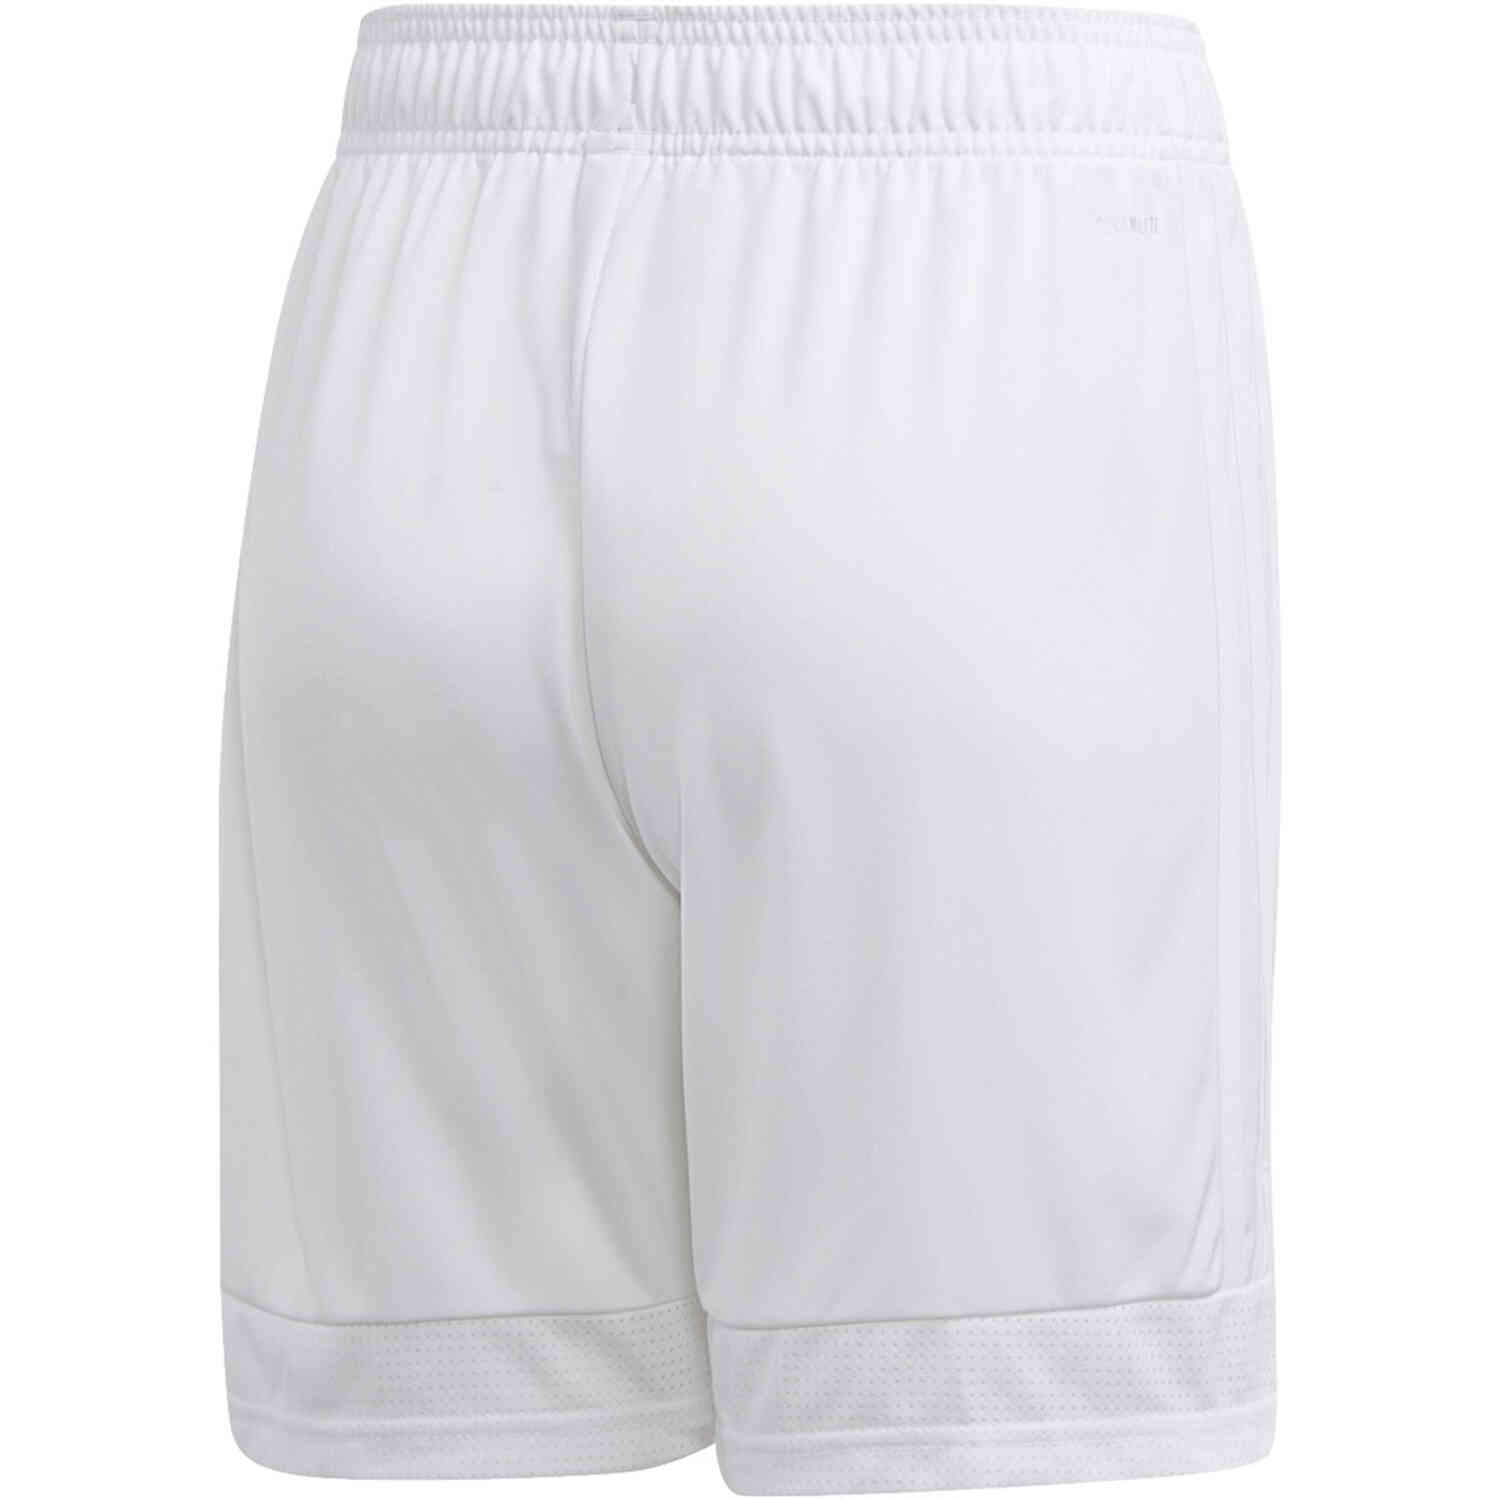 Kids adidas Tastigo 19 Shorts - White - SoccerPro